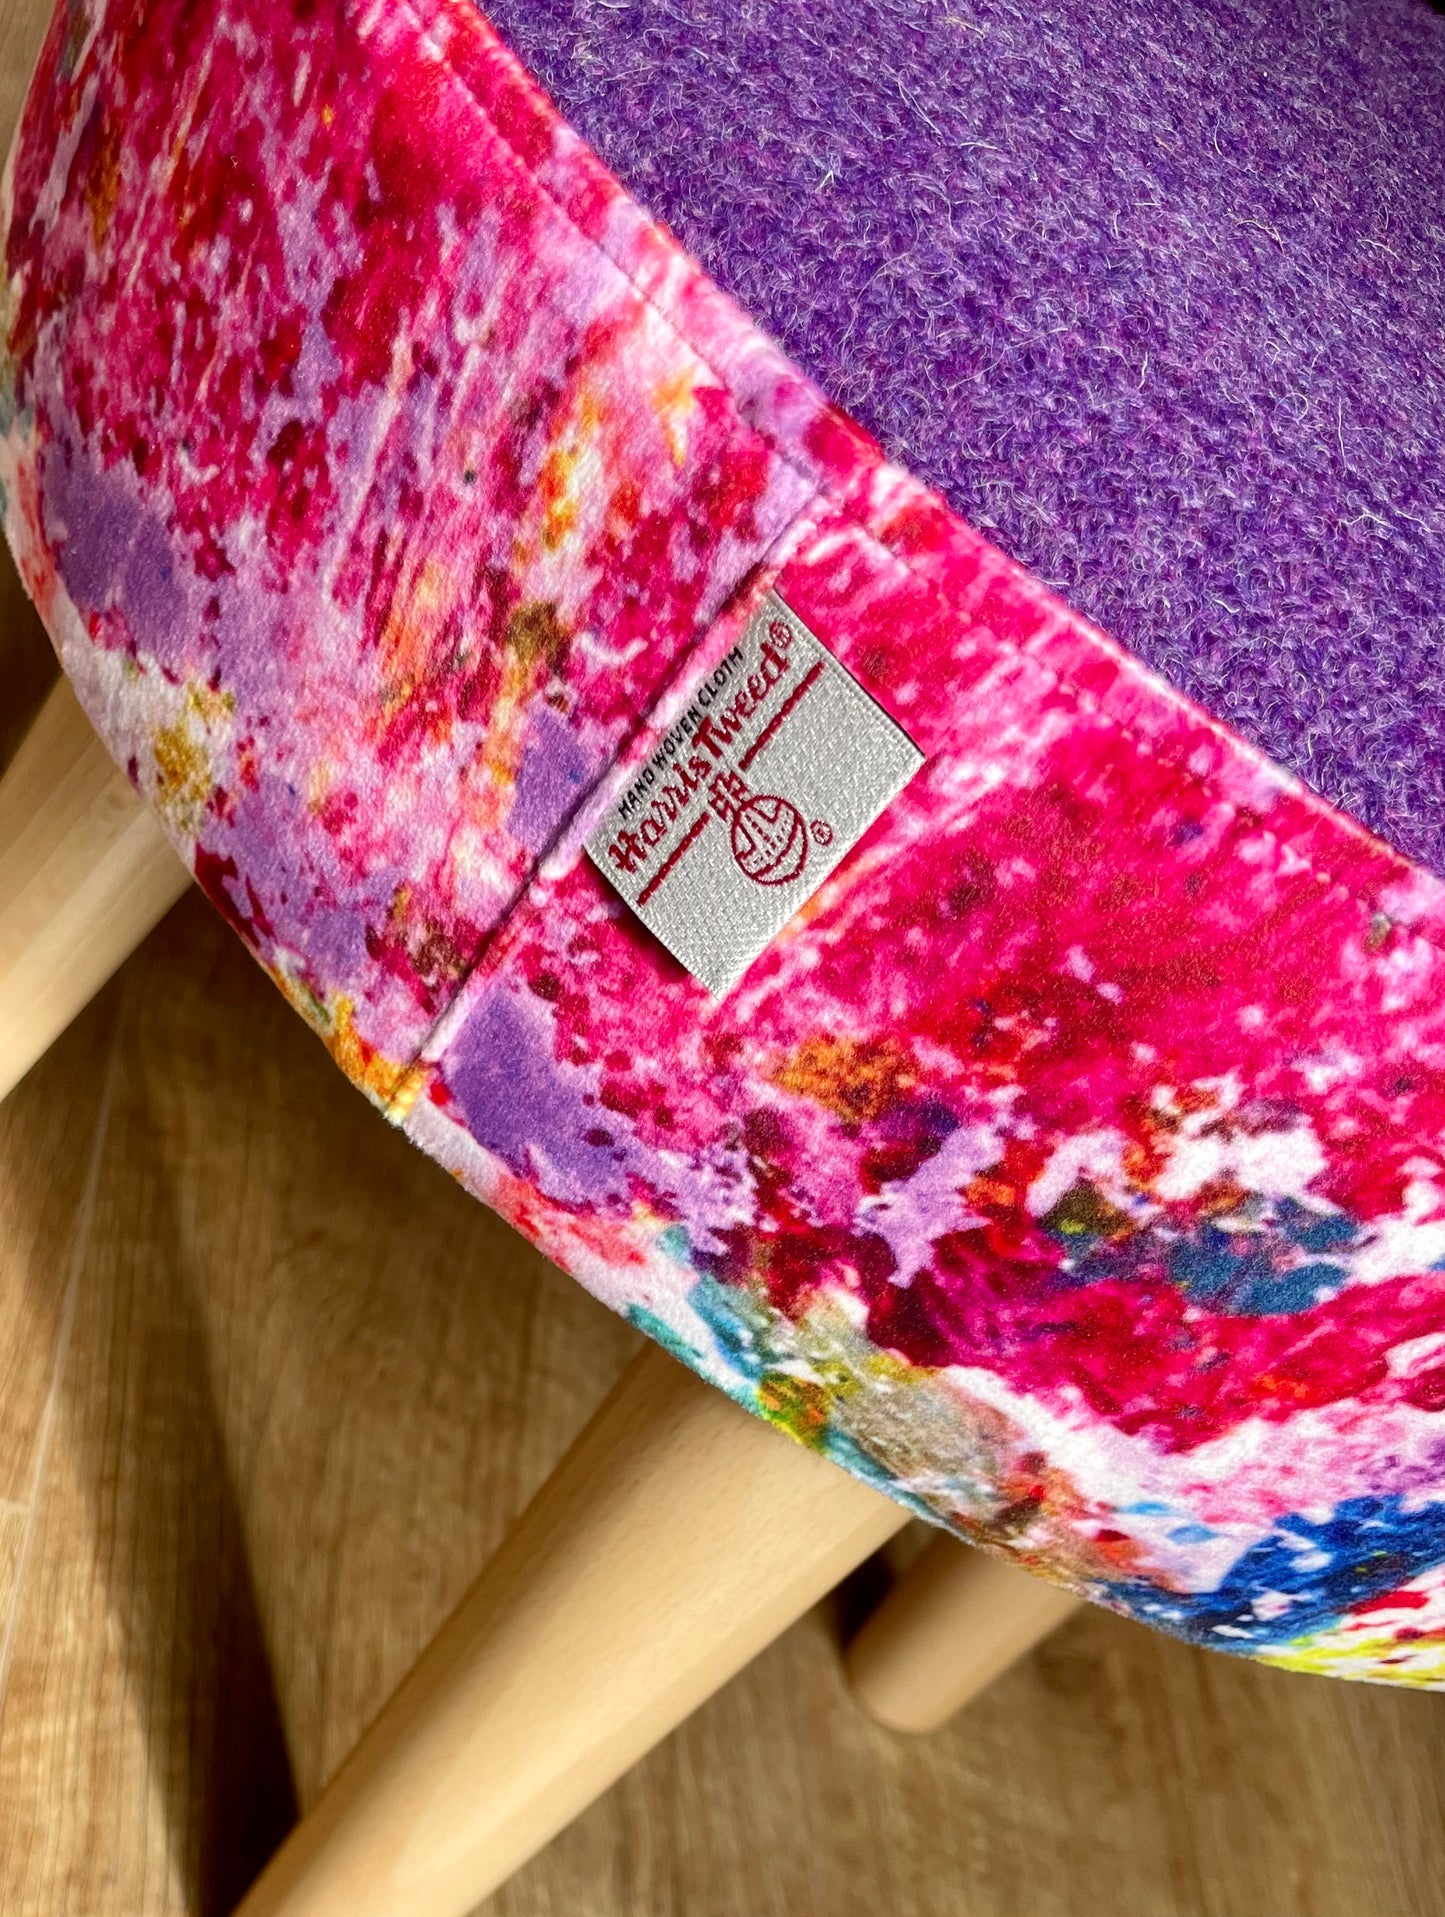 Paint Spray Velvet and Purple Harris Tweed Small Footstool